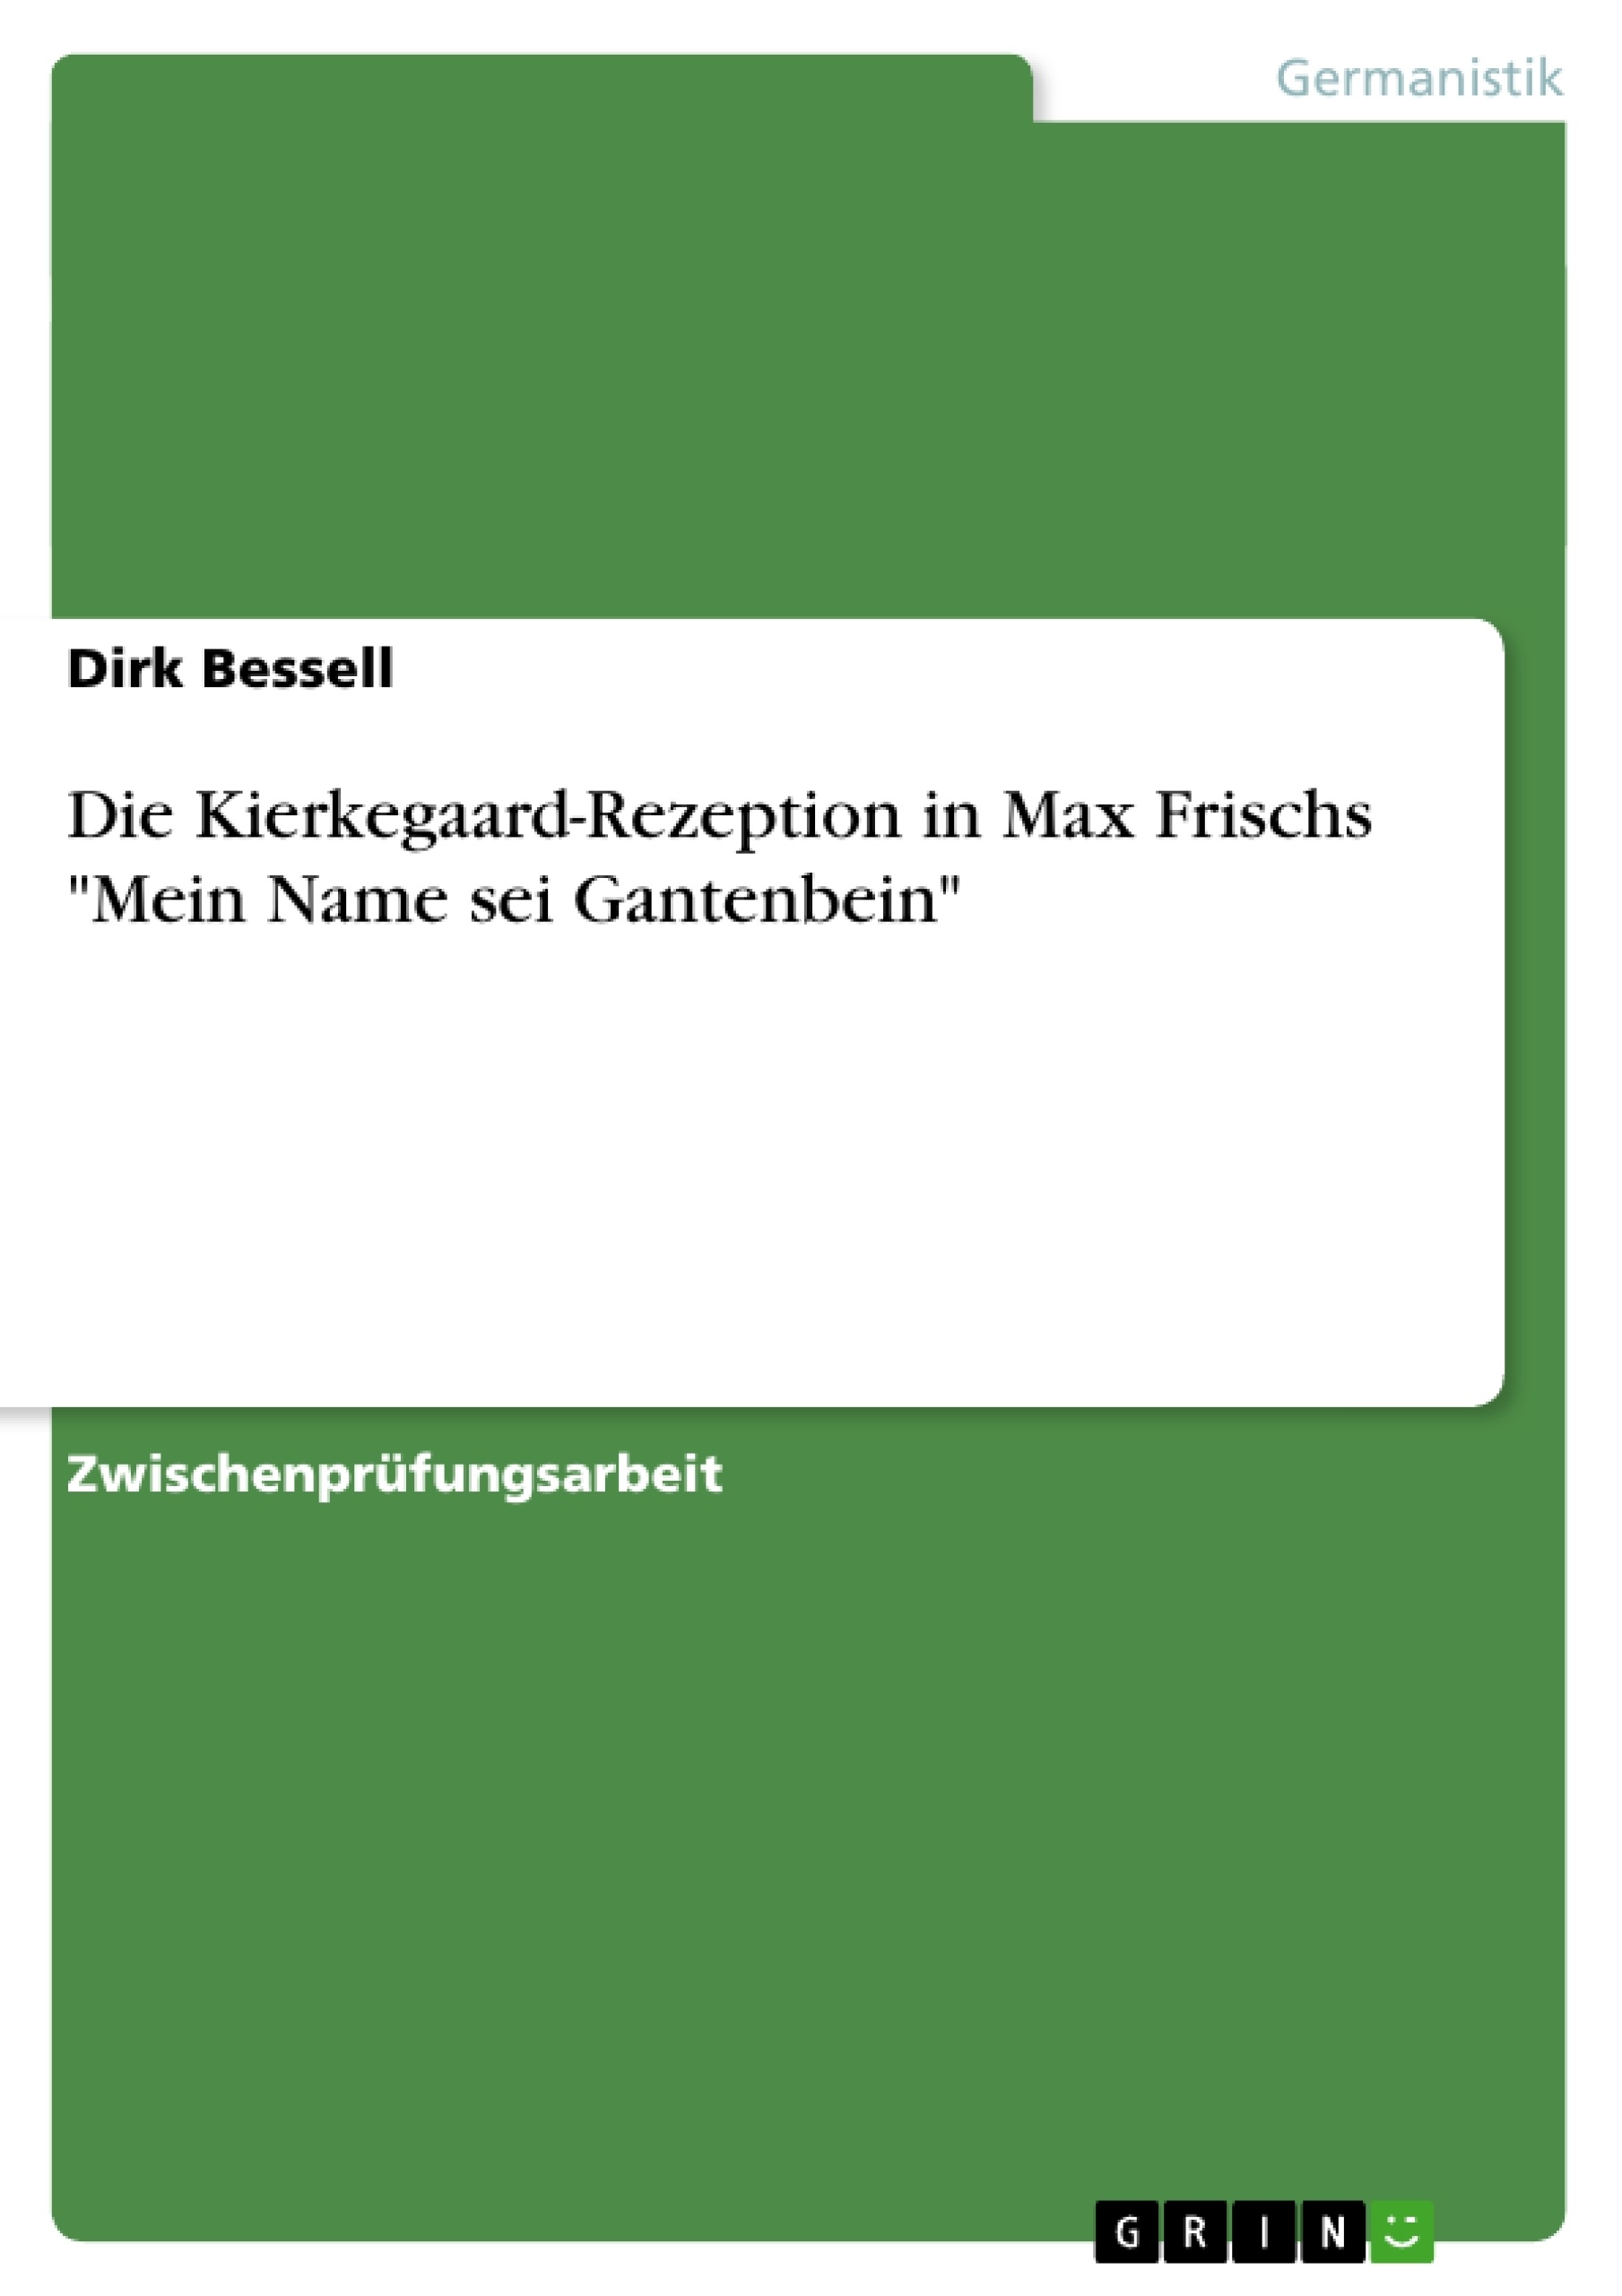 Título: Die Kierkegaard-Rezeption in Max Frischs "Mein Name sei Gantenbein"